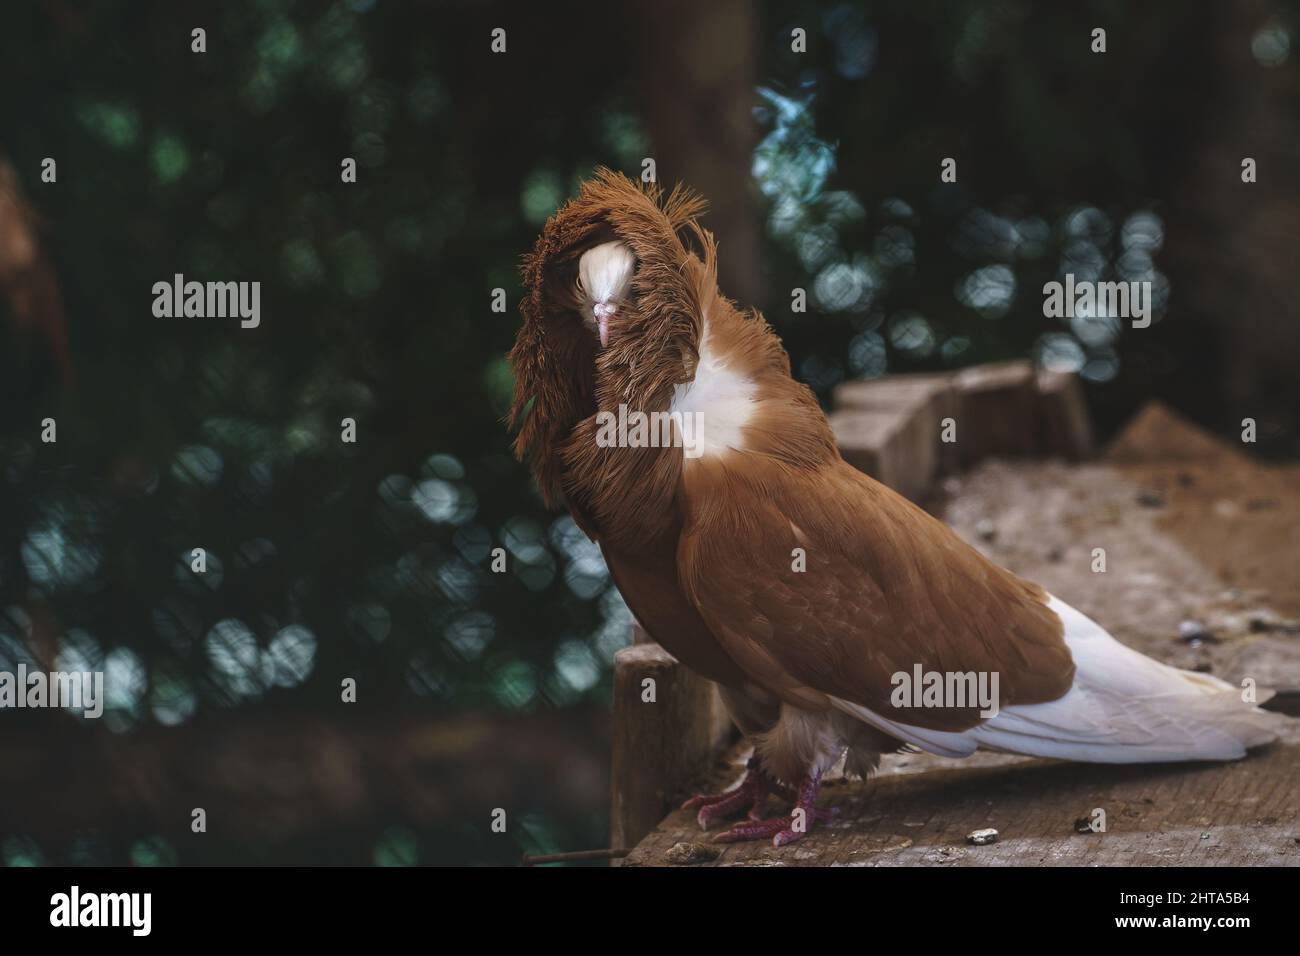 Closeup of a Jacobin pigeon Stock Photo